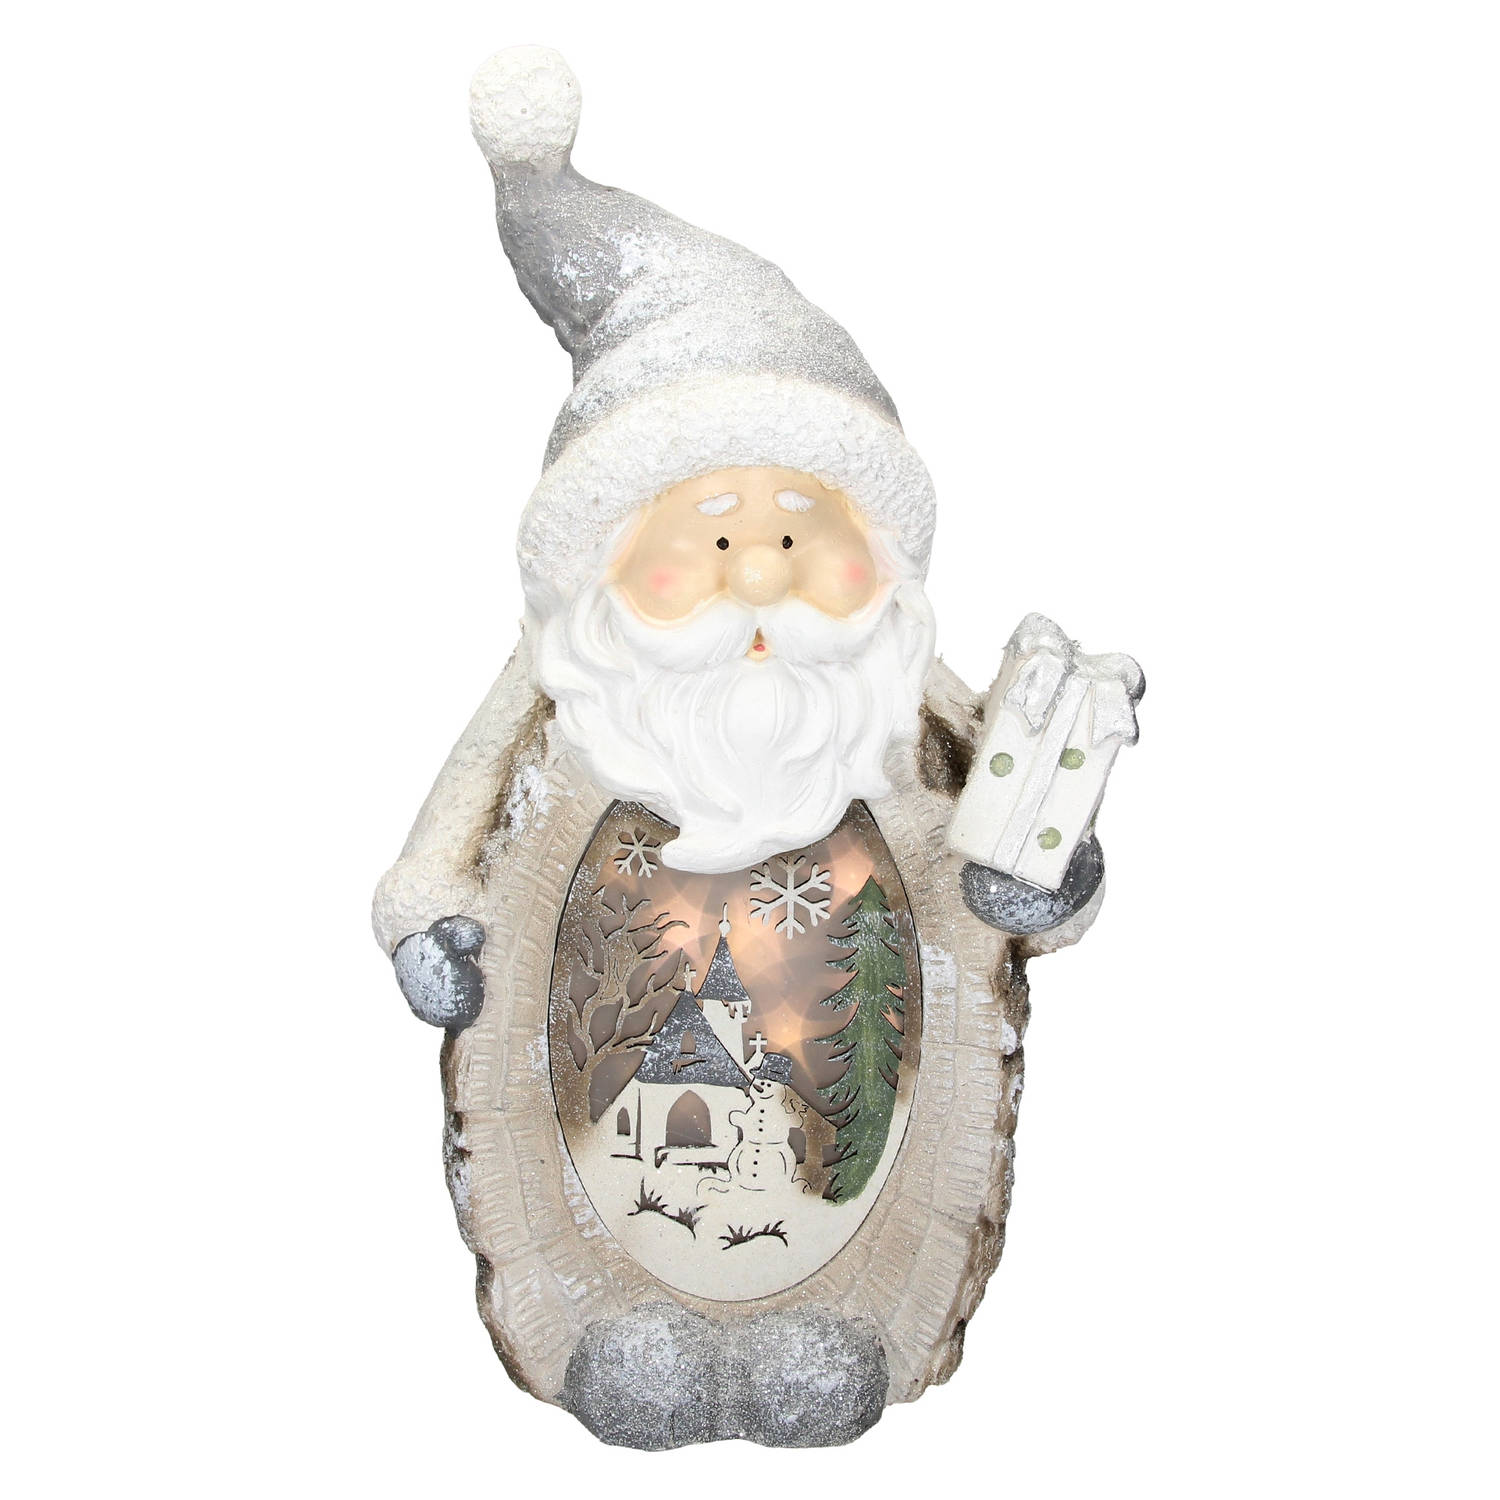 Ecd Germany Kerstman Decoratie Figuur Met Led-verlichting 52cm Warm Wit Met Grijze Hoed En Sjaal, Houten Look